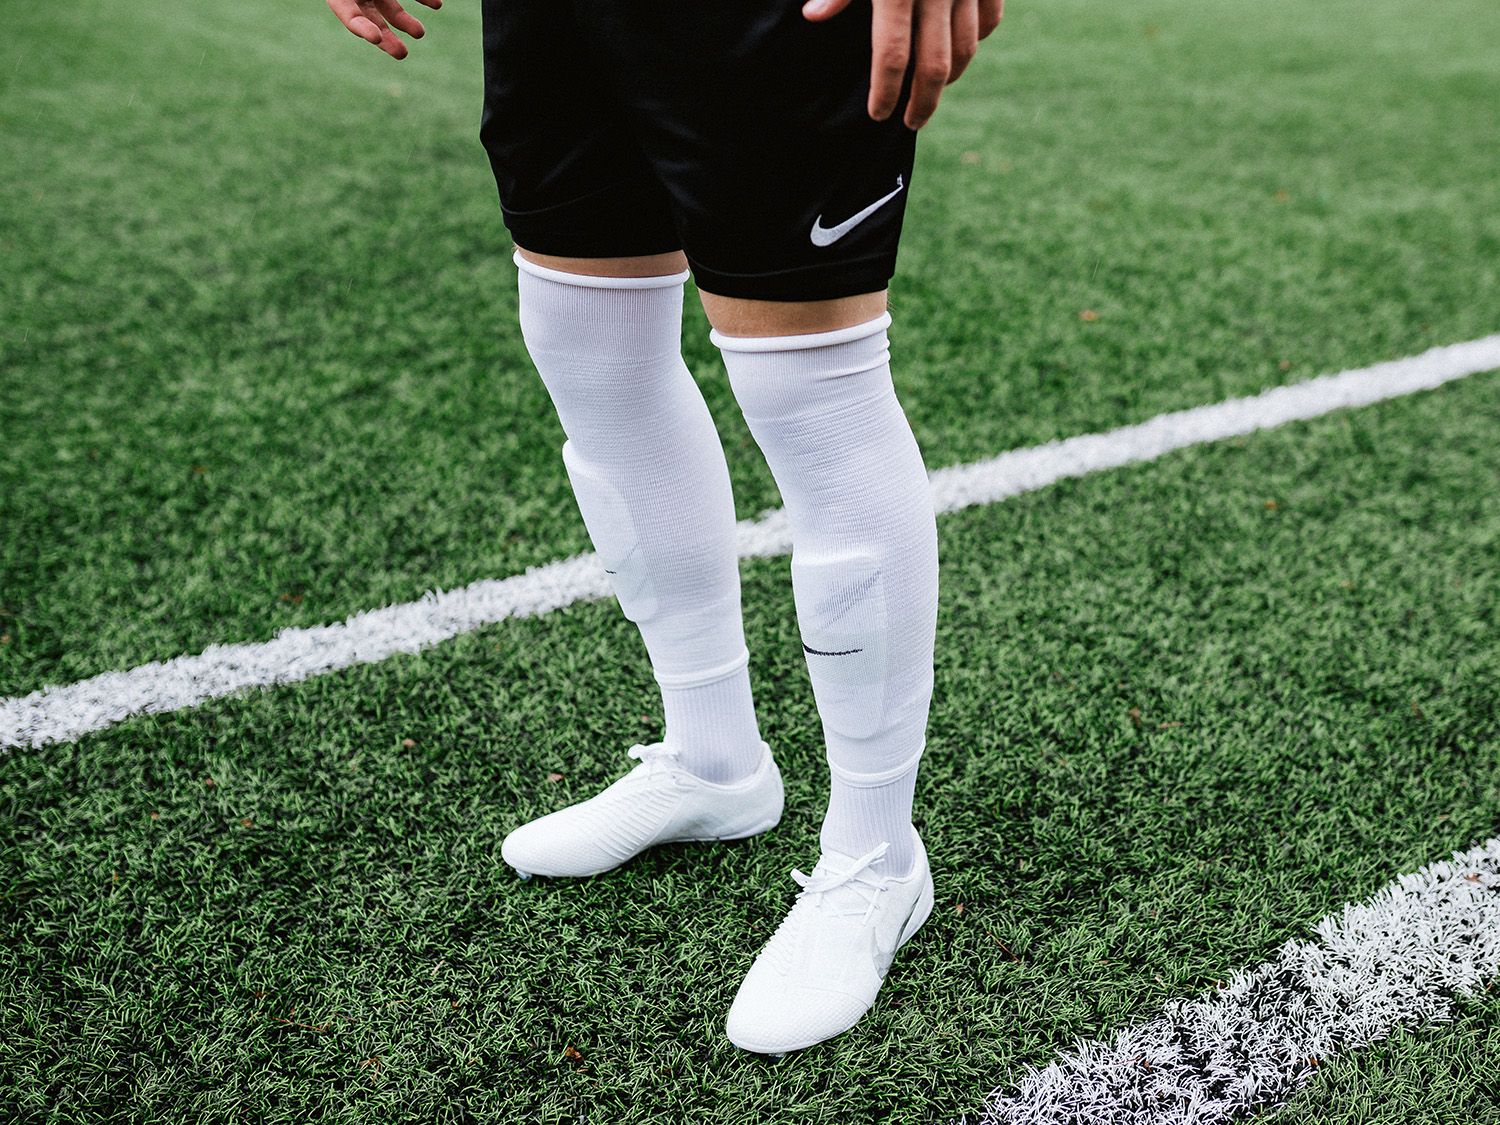 adidas cut off soccer socks